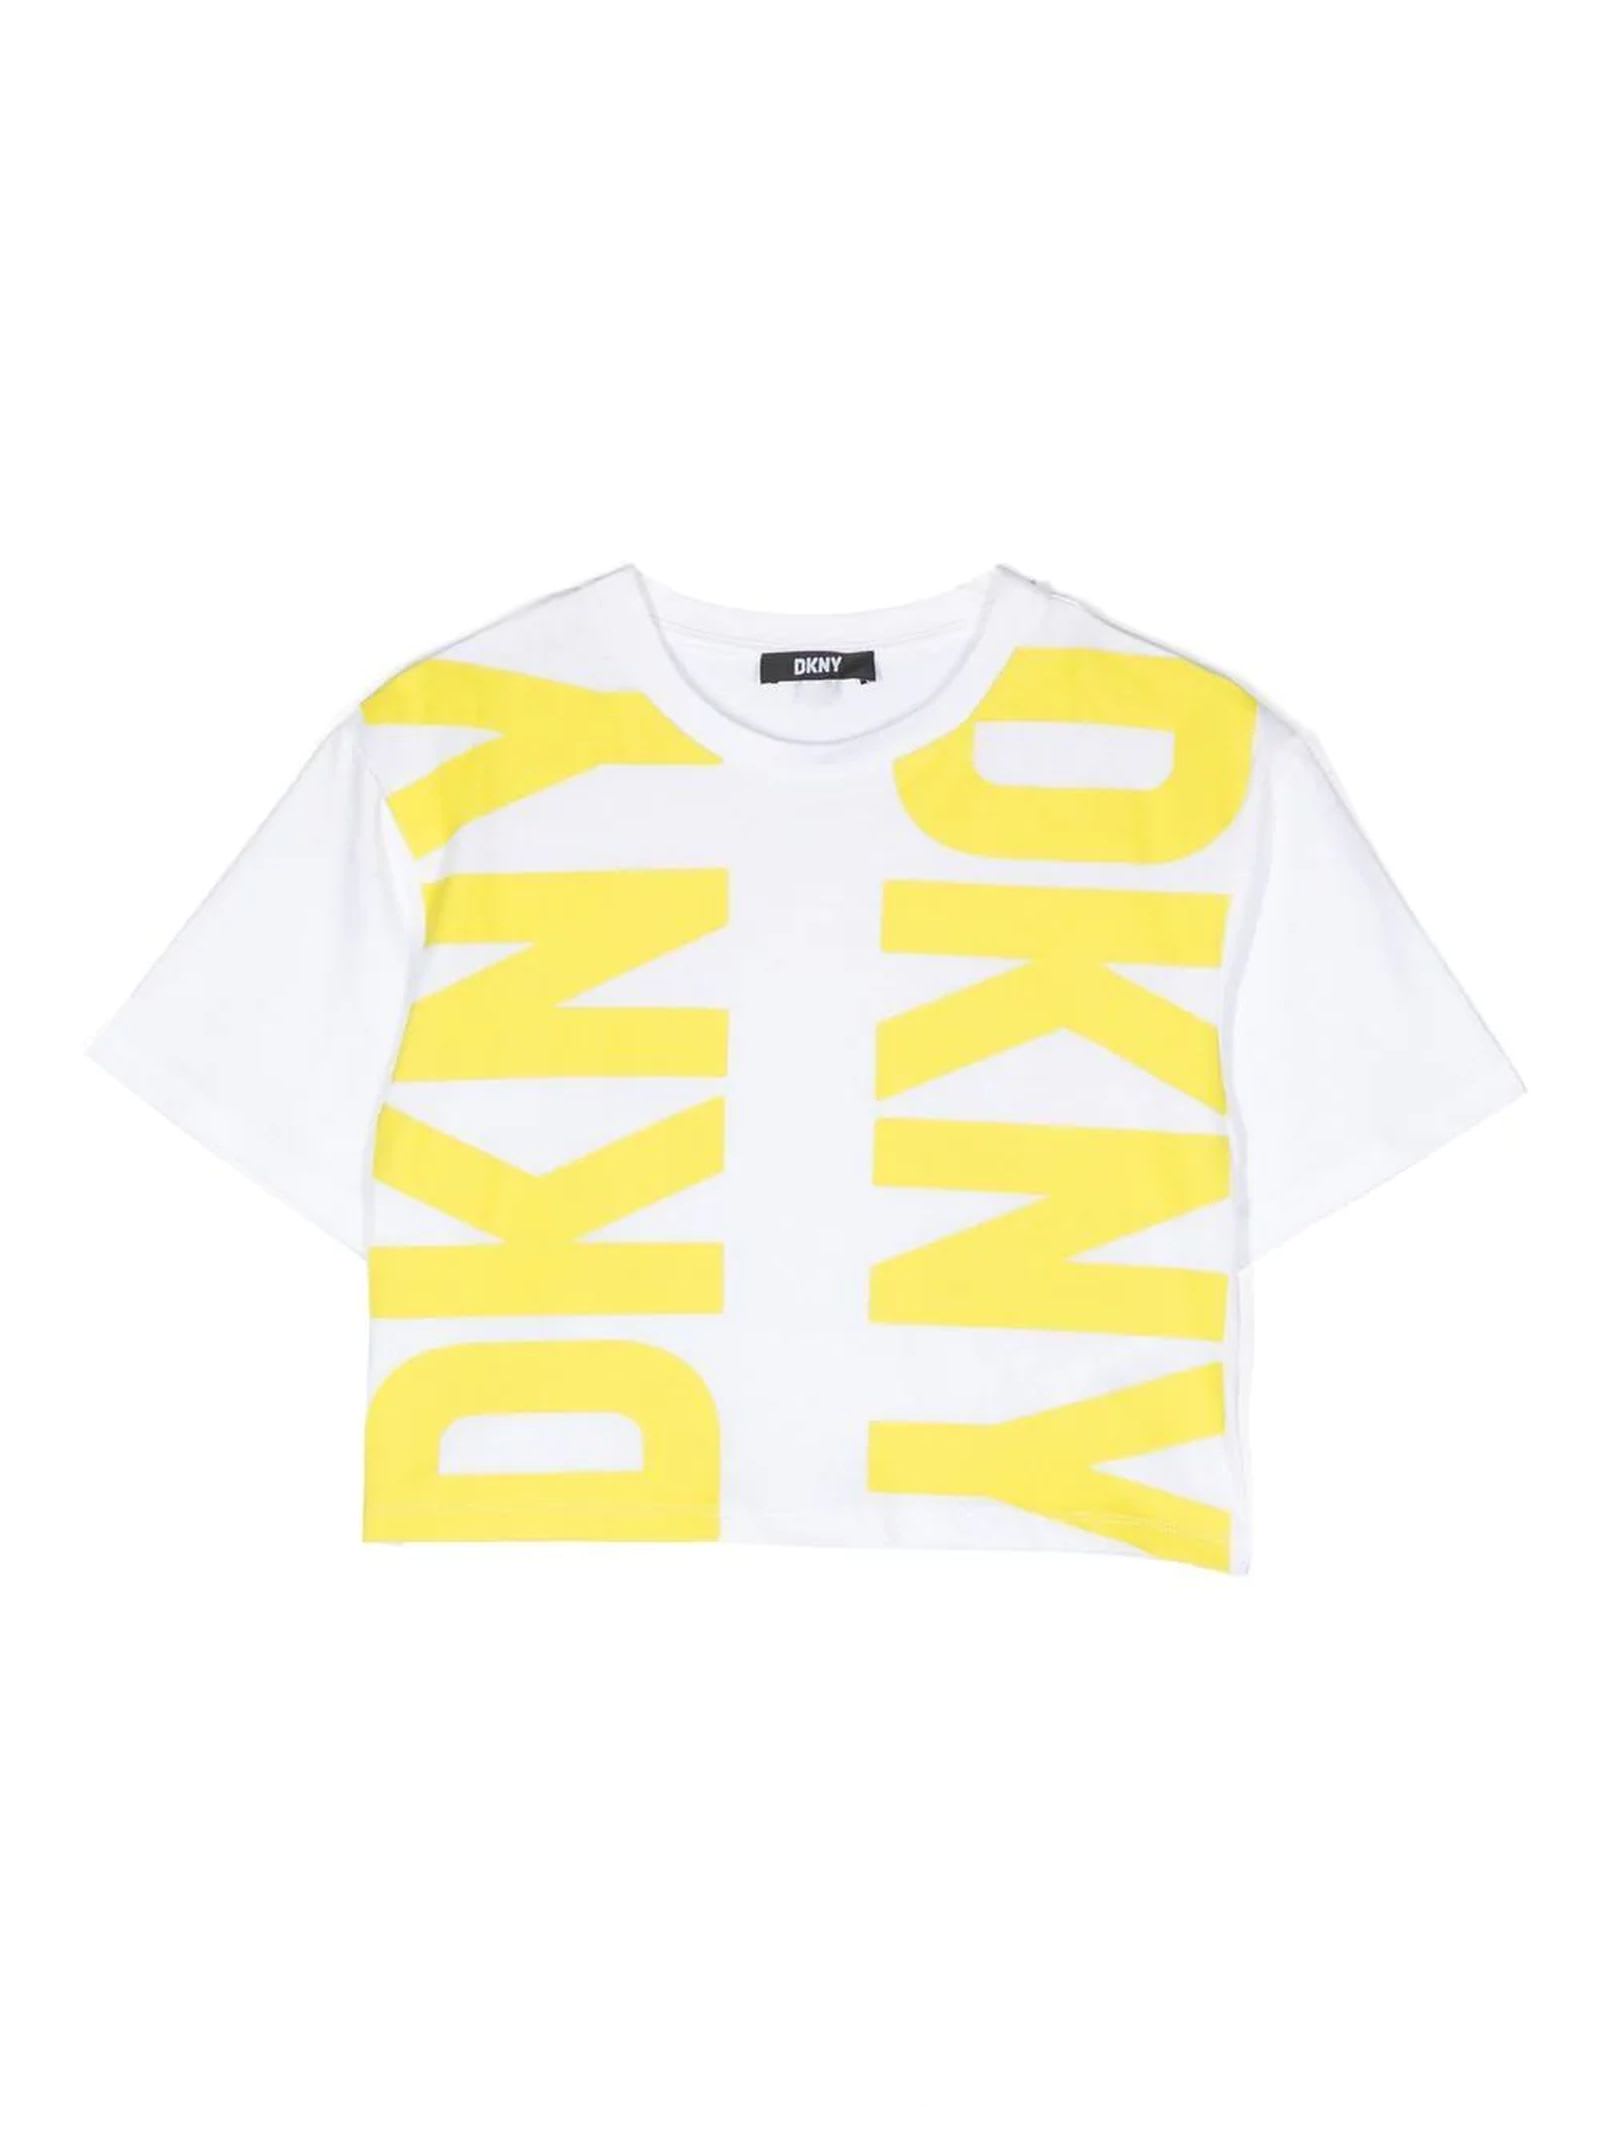 DKNY White Cotton Tshirt